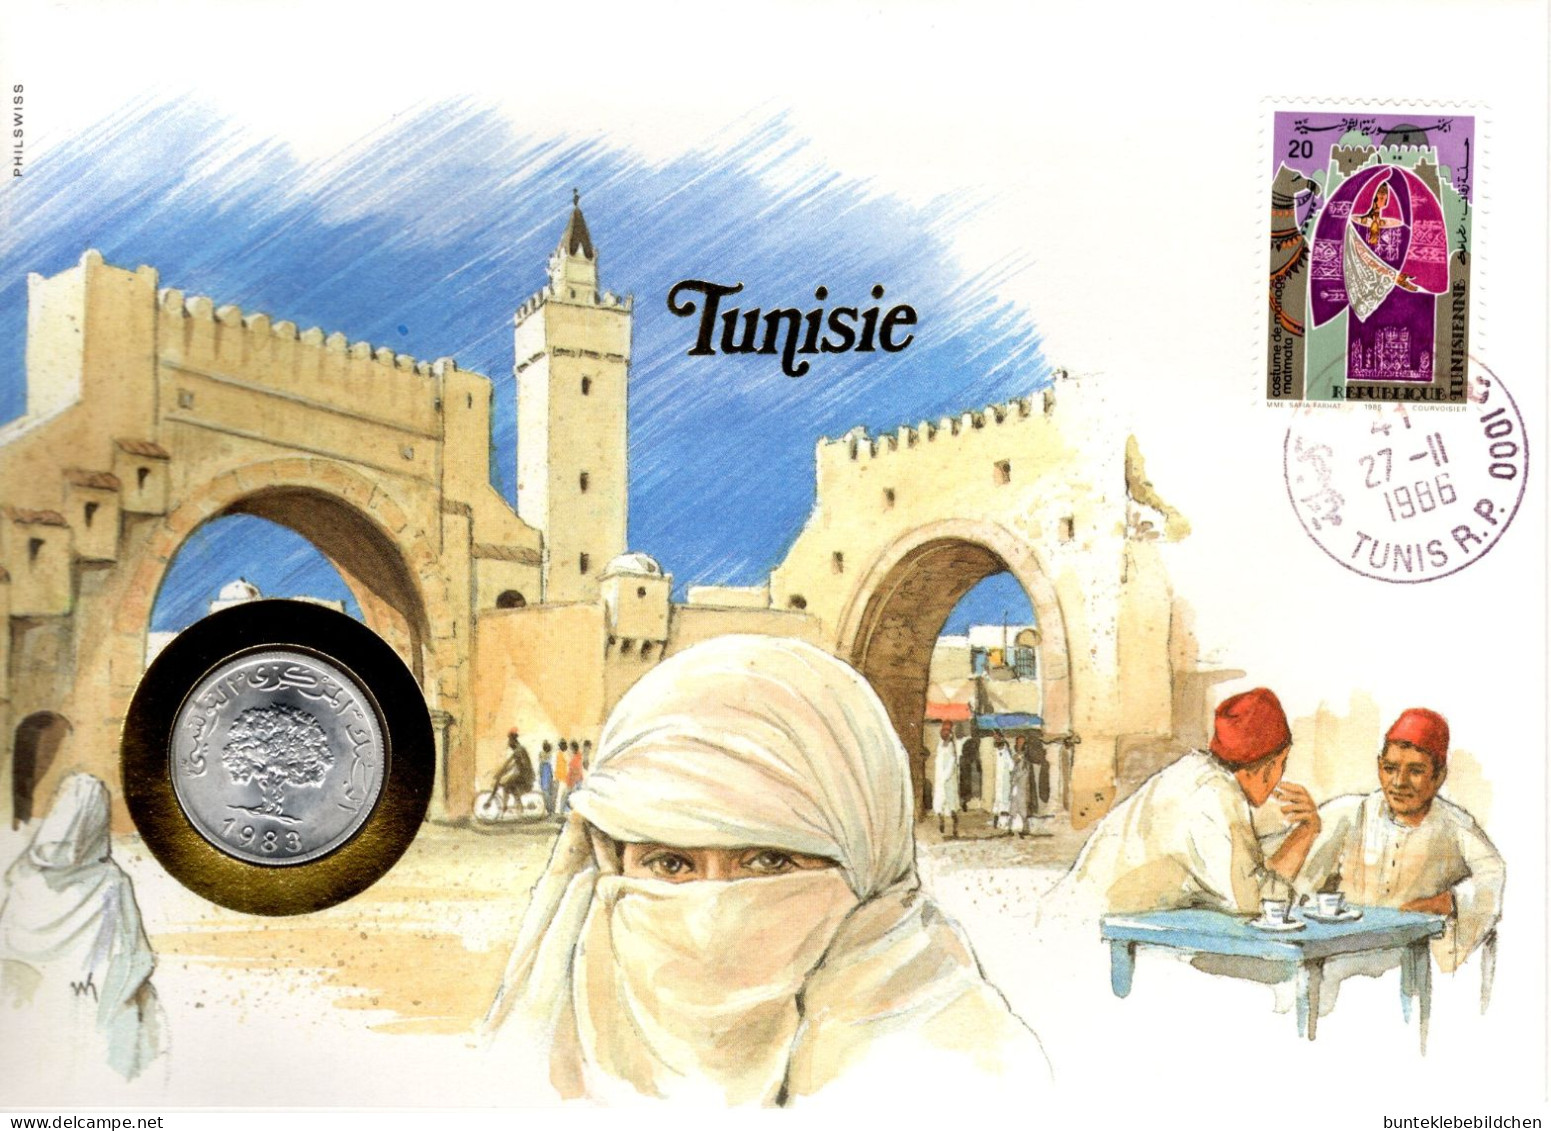 Numisbrief - Tunesien - Tunisia